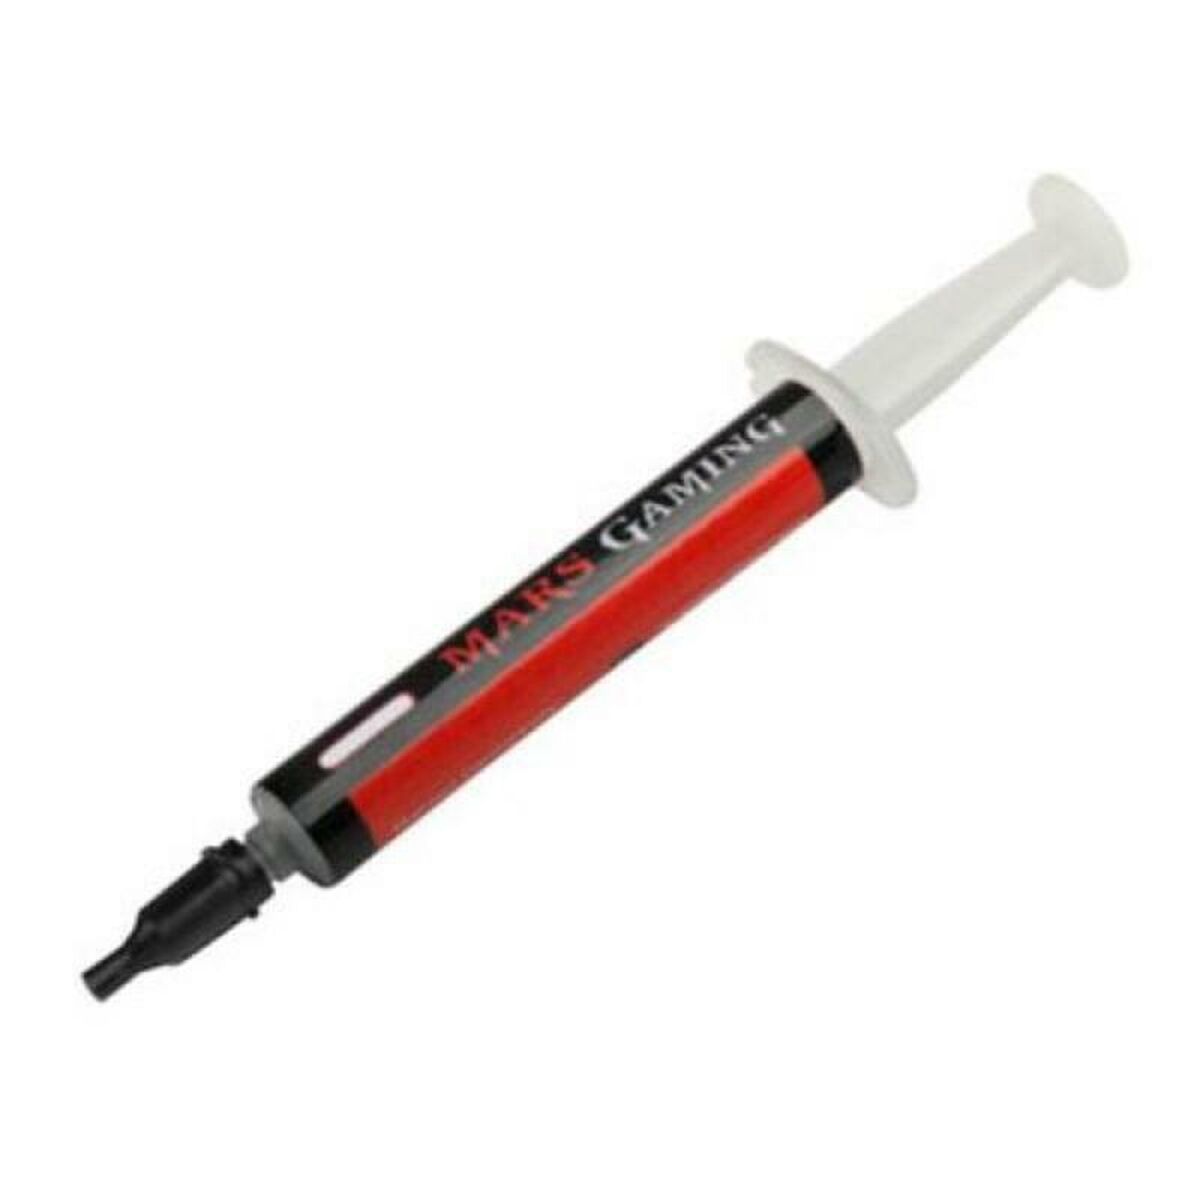 Thermal Paste Syringe Tacens MT1 3 g Grey